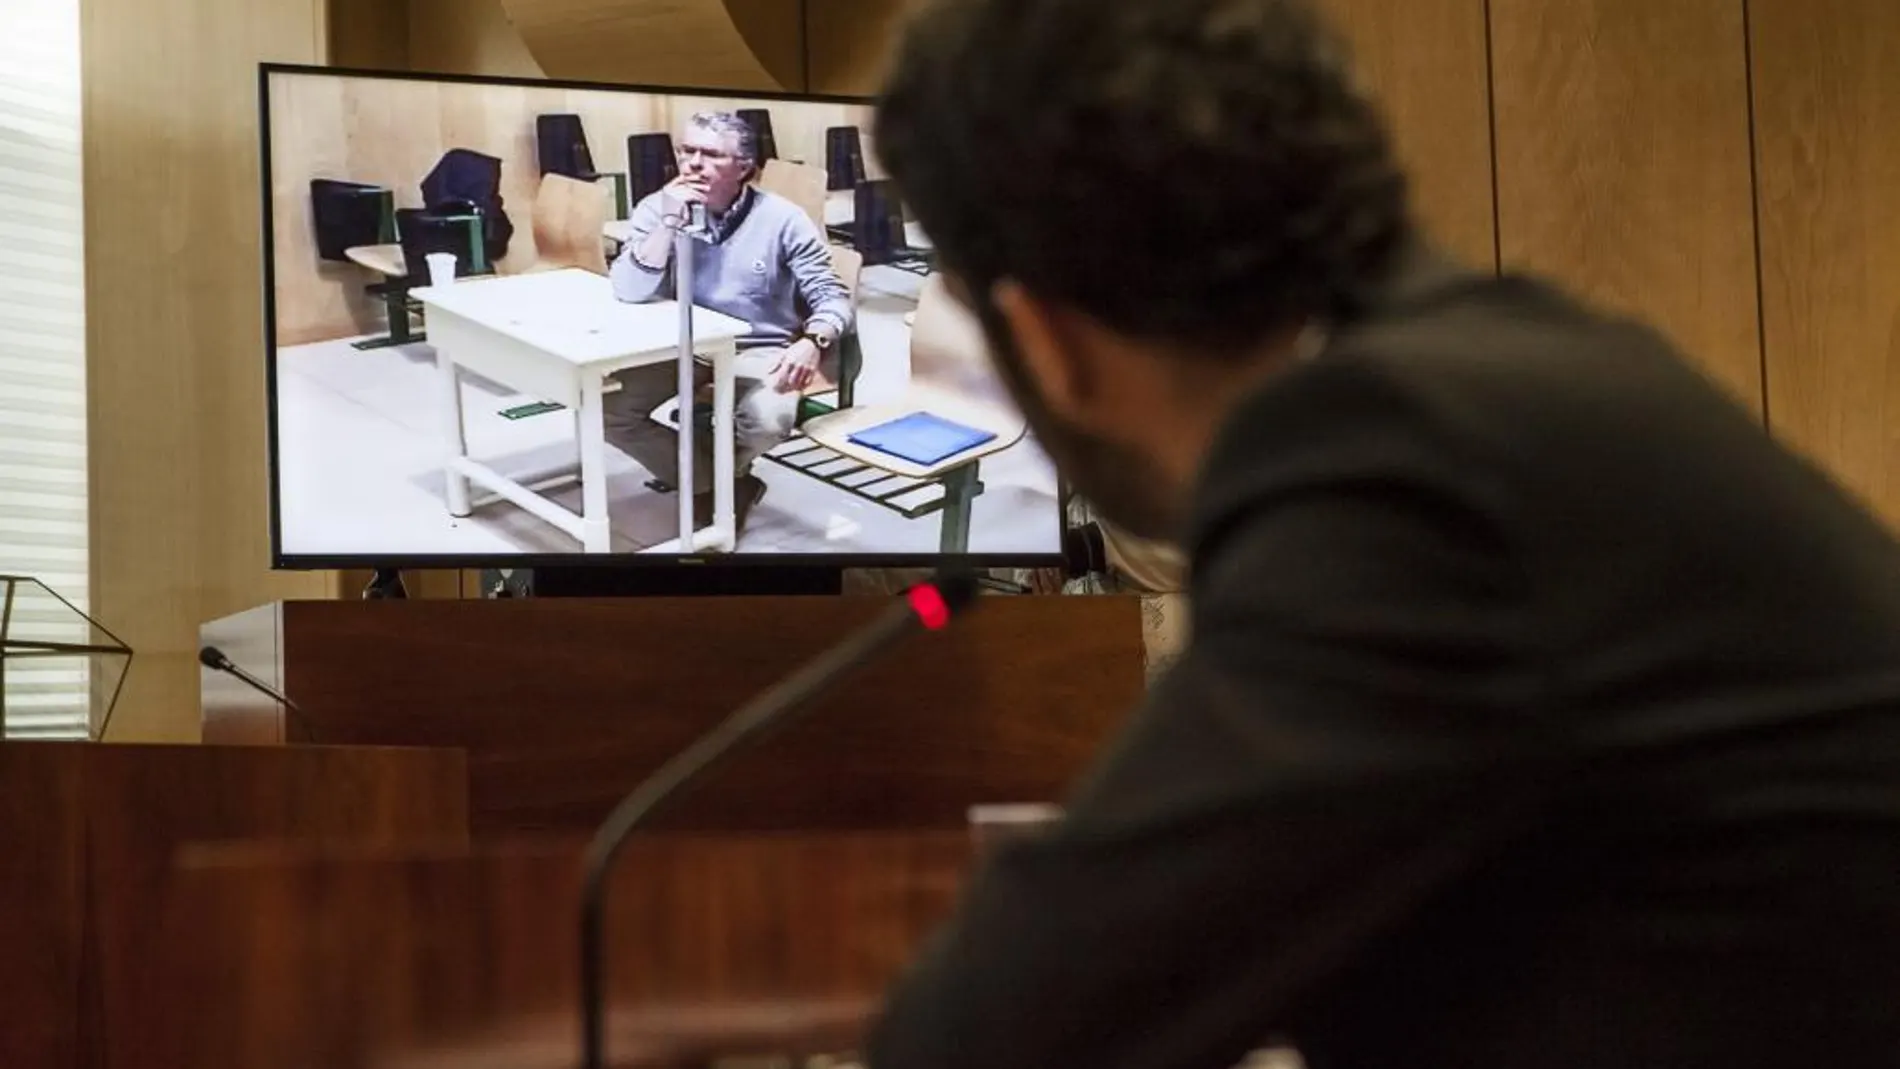 El exconsejero y exsecretario general del PP de Madrid Francisco Granados ha comparecido hoy por videoconferencia desde la prisión de Estremera.